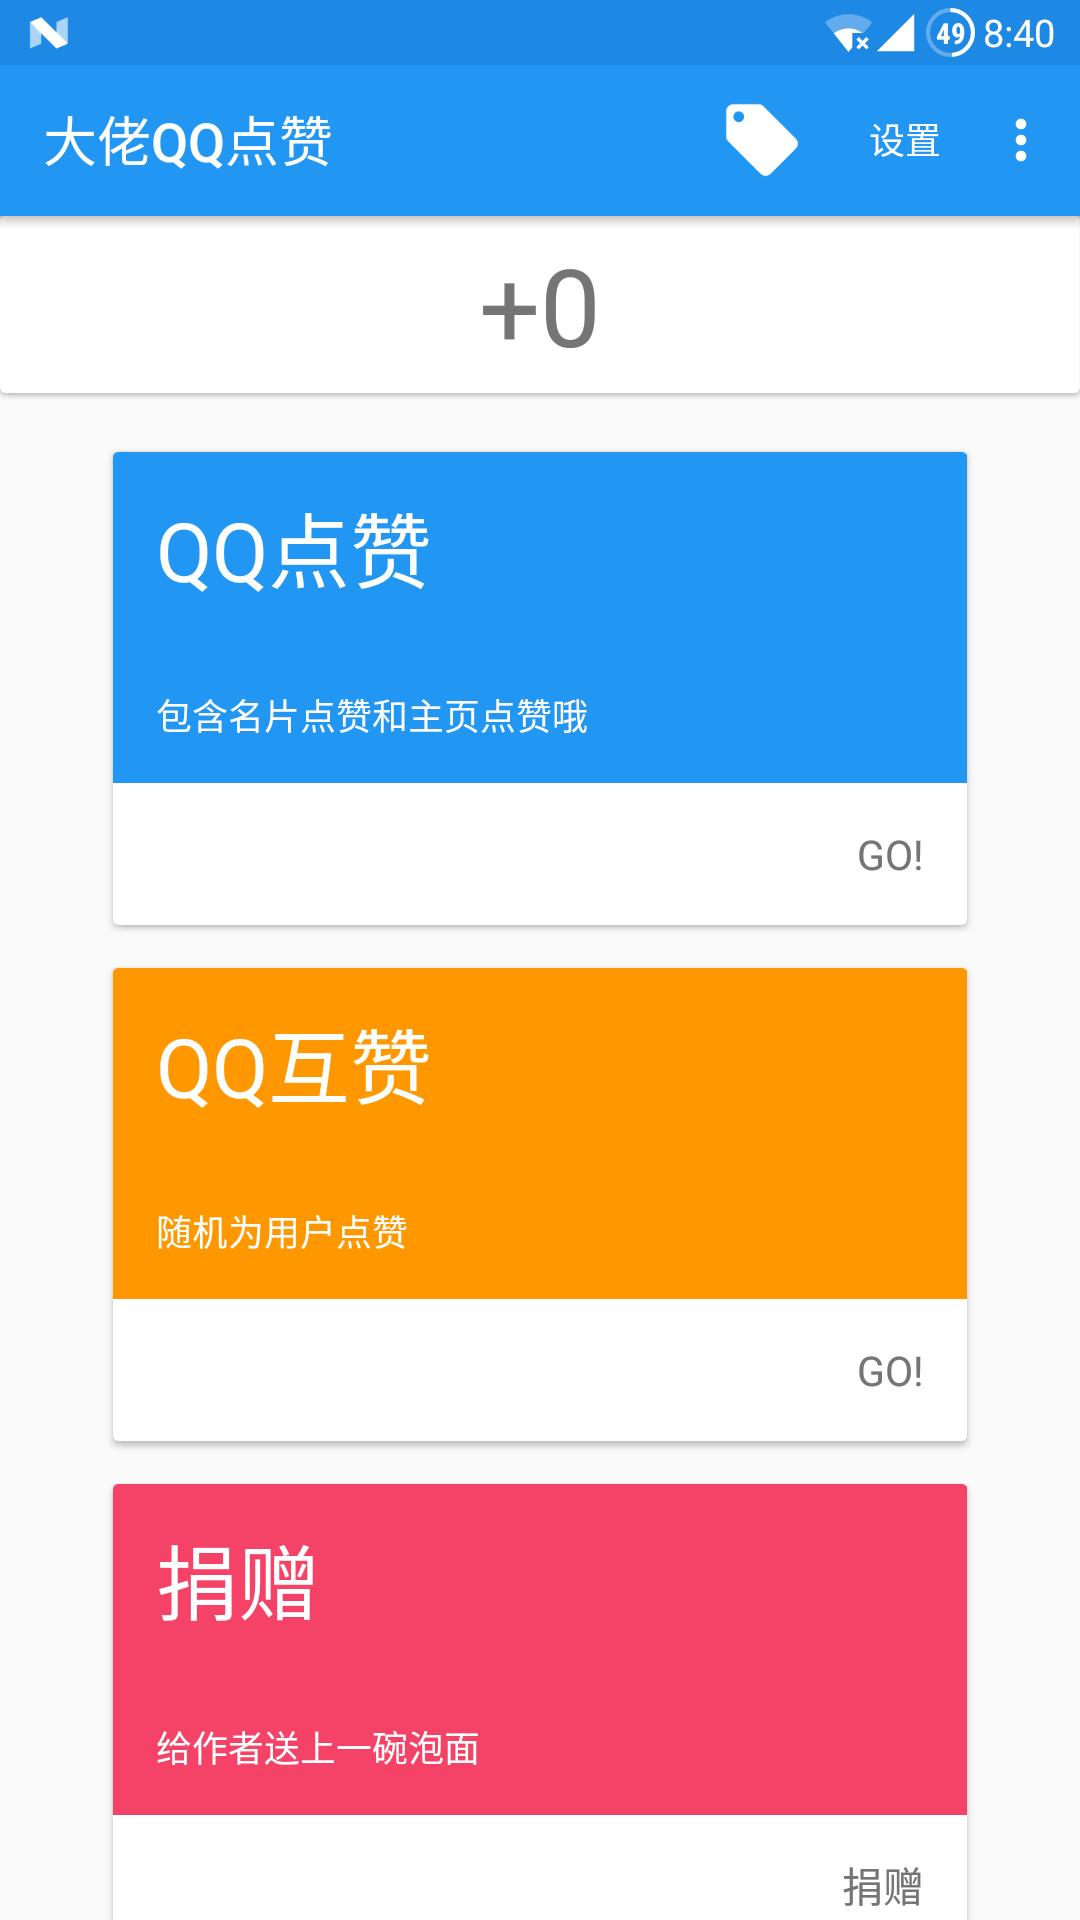 QQ名片互赞群2000人-新锐排行榜-小谢天空权威发布的QQ排行榜 - 自助刷赞网